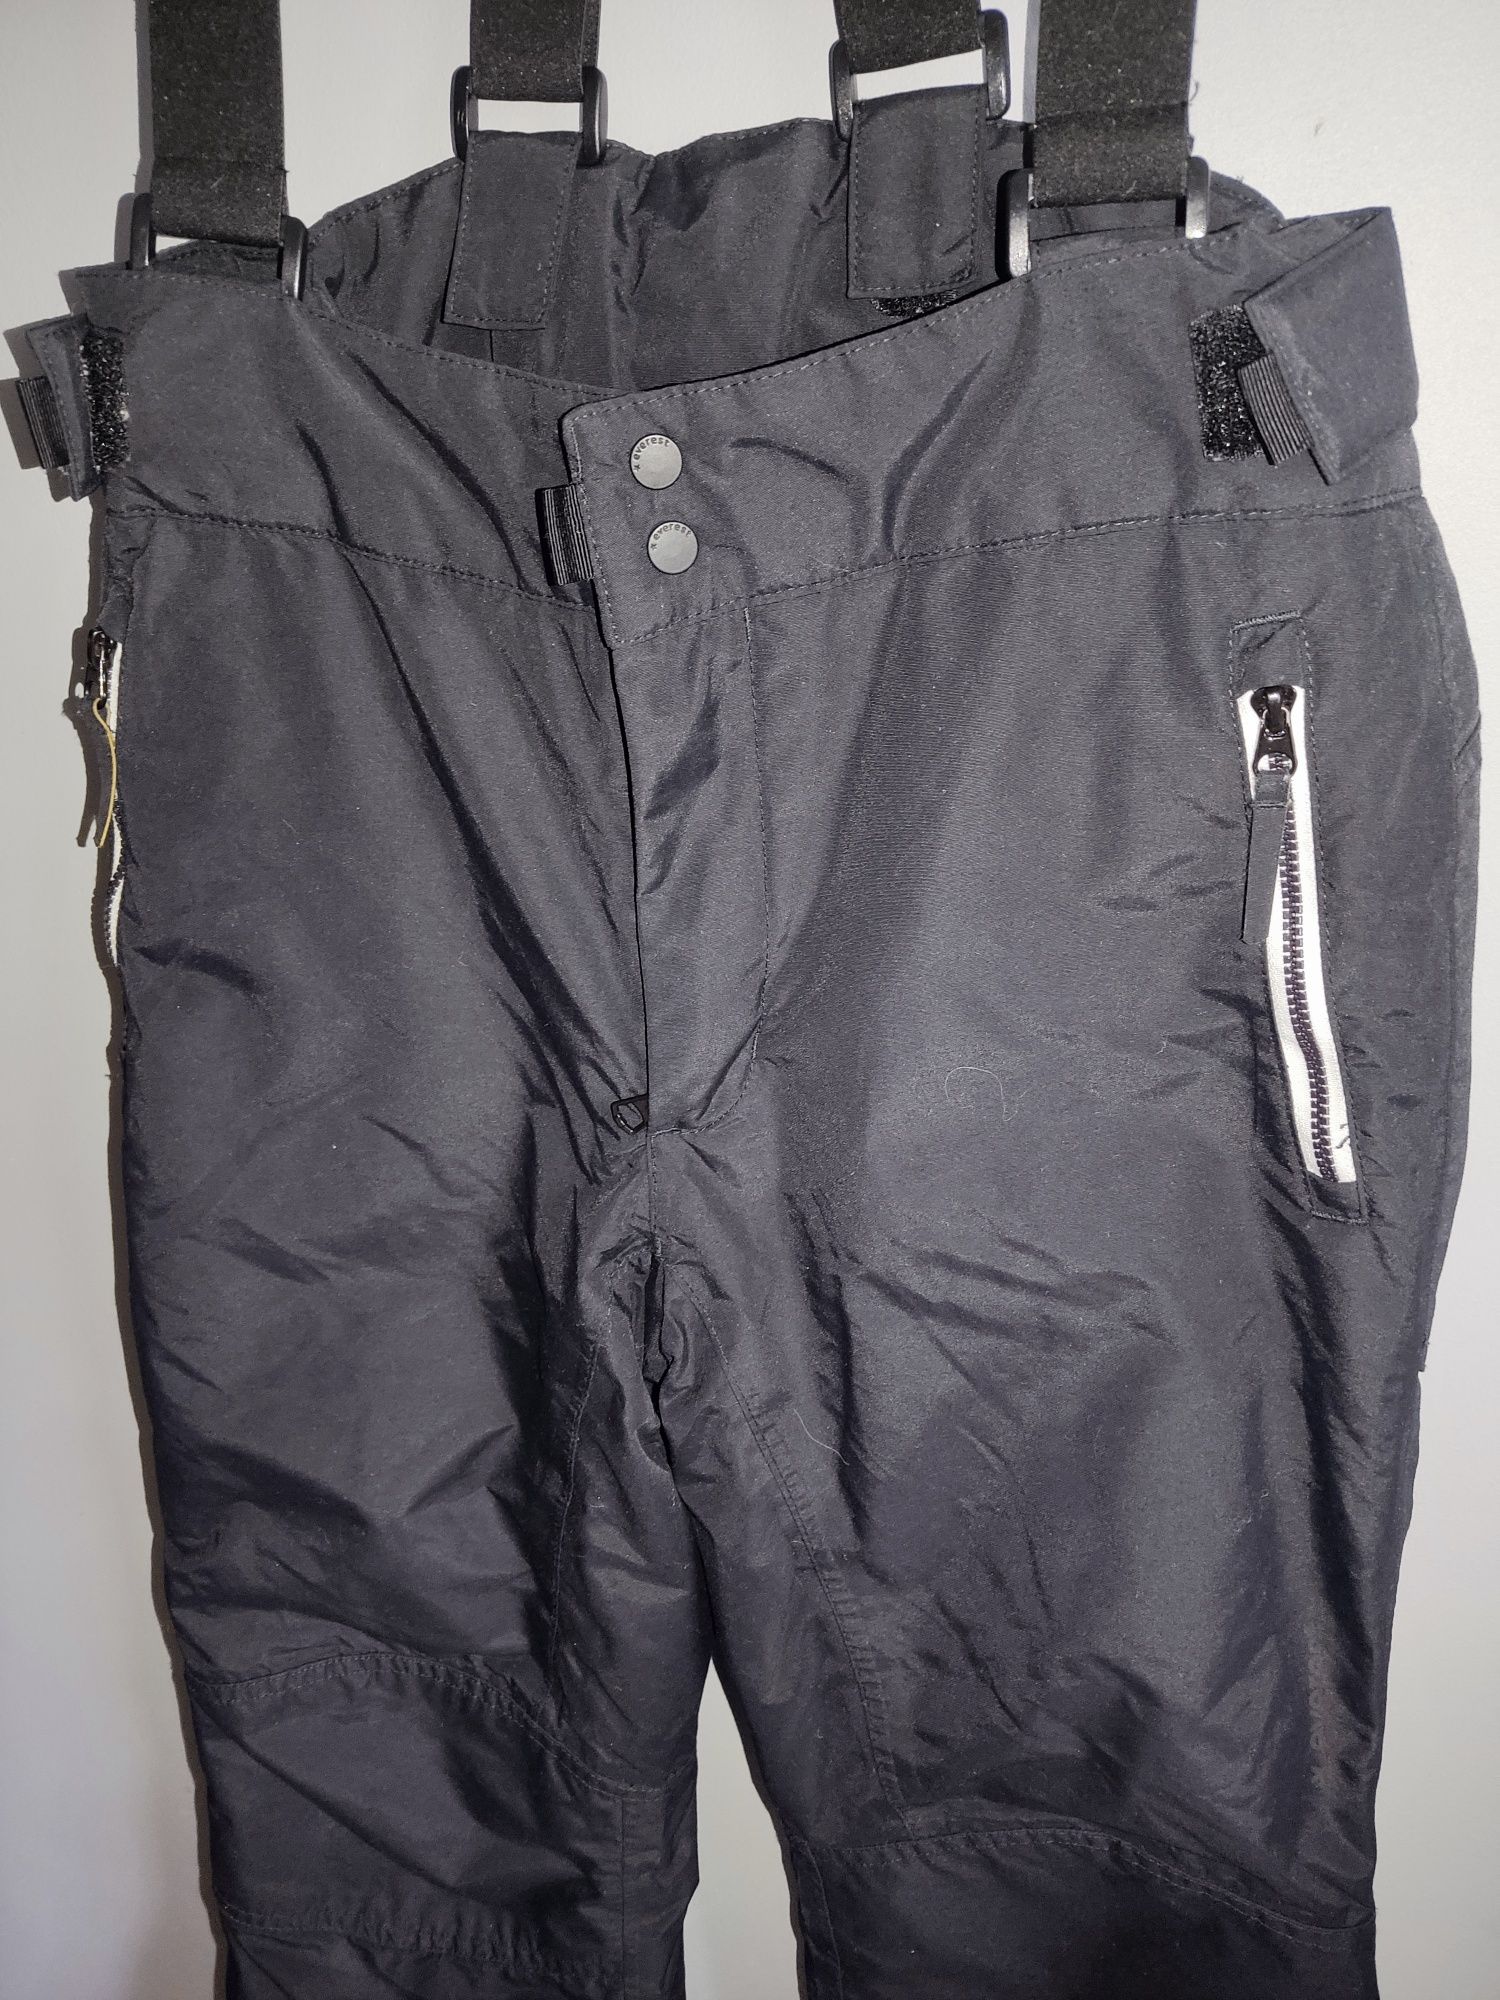 Everest spodnie narciarskie zimowe wodoodporne ocieplane szelki r.152